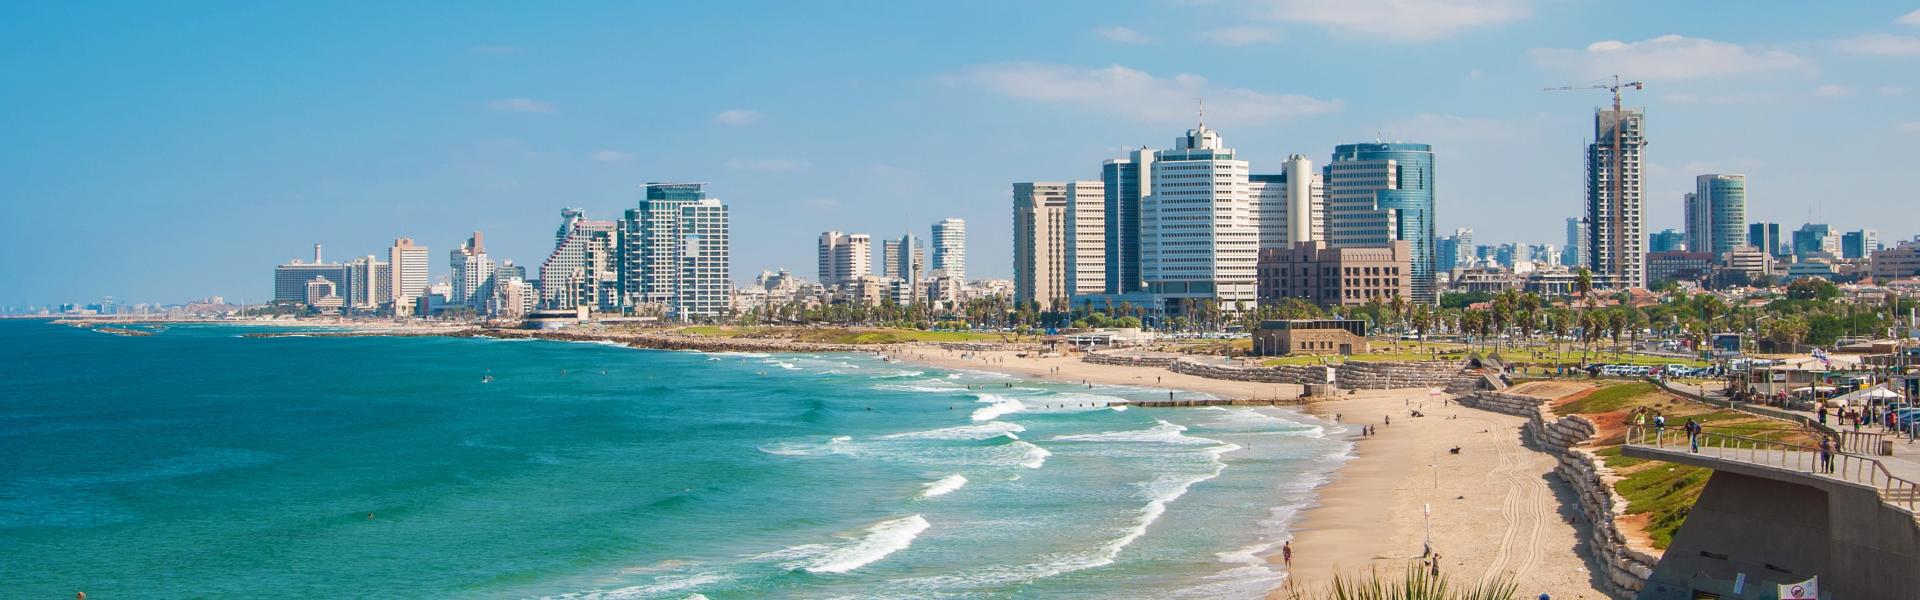 Aluguel de temporada, chalés e pousadas em Israel - LarDeFérias